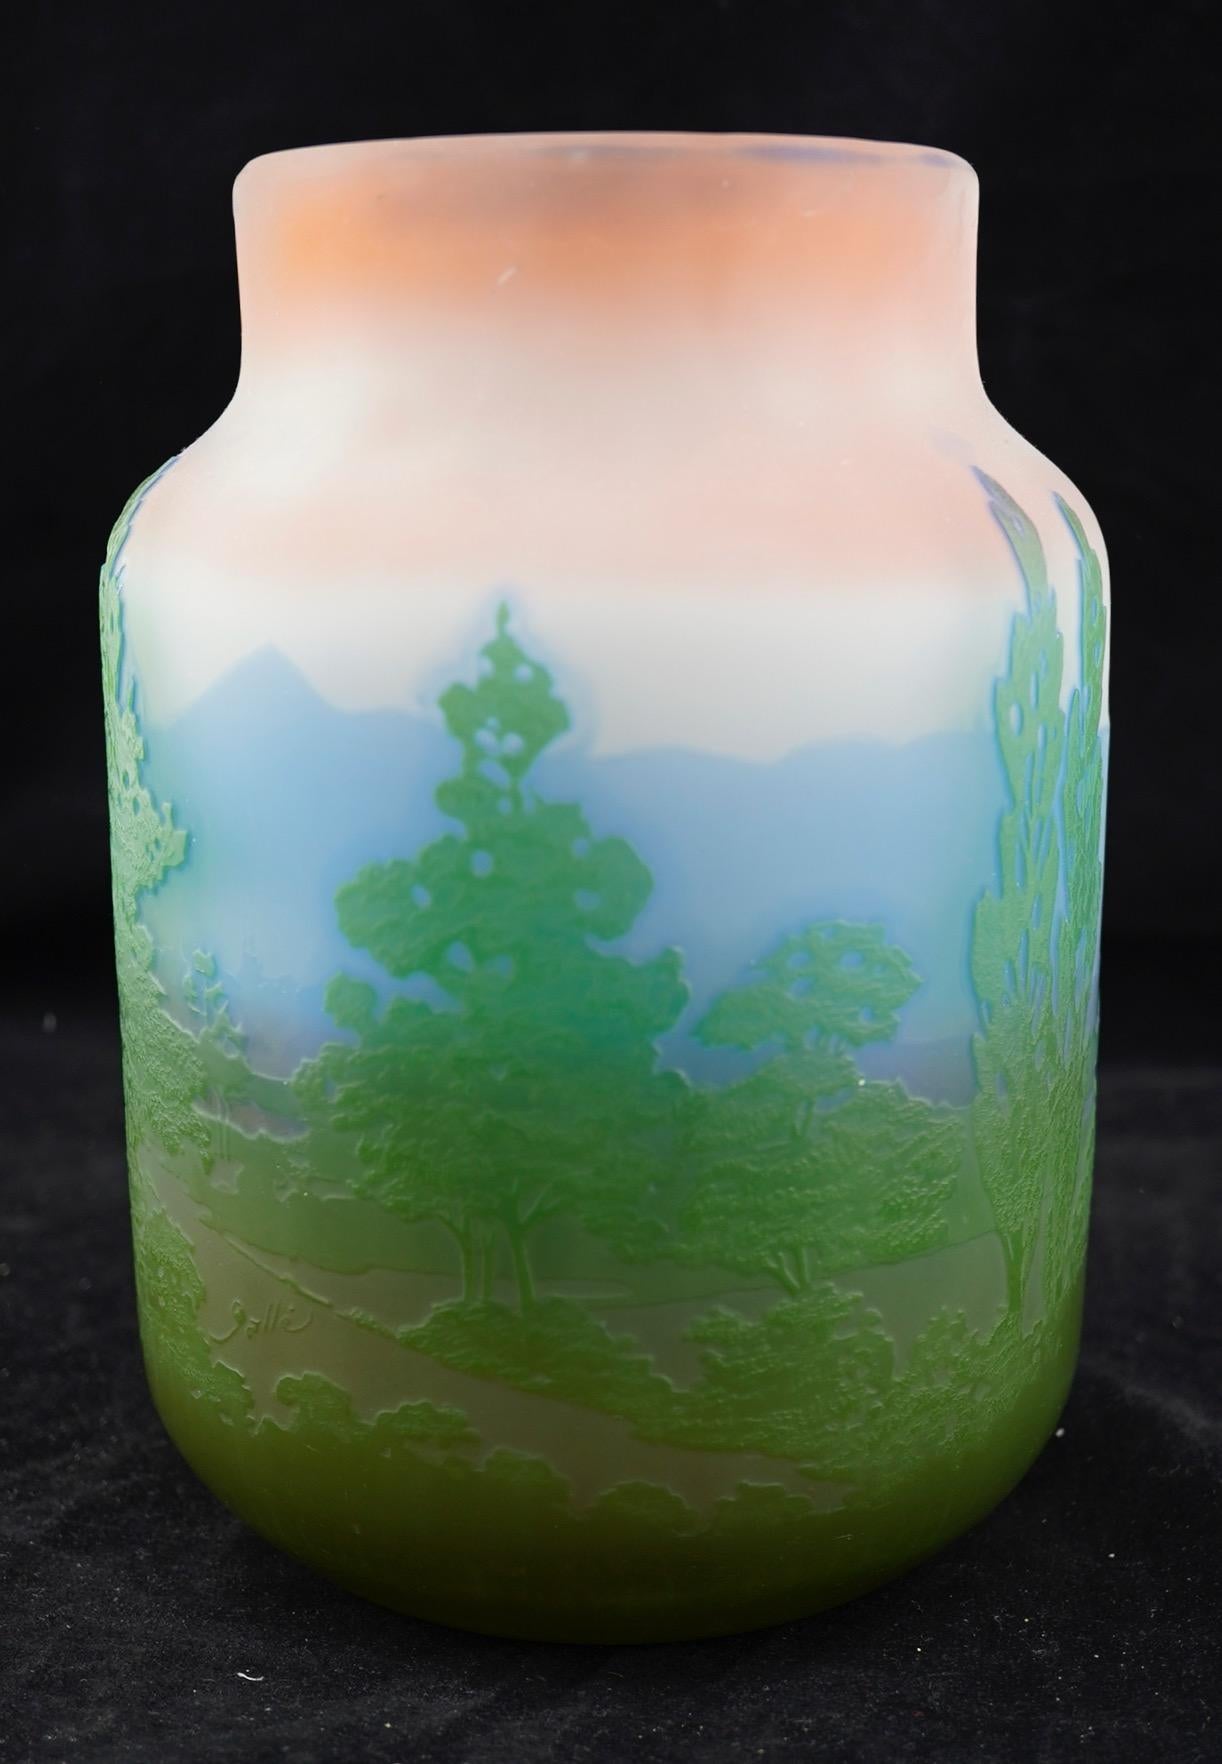 Vase mit Kamee aus rosafarbenem Milchglas, verziert mit einer grünen Baumszene vor einer blauen Bergkette. Mindestens 3 Glasschichten. Signiert in Kamee mit 